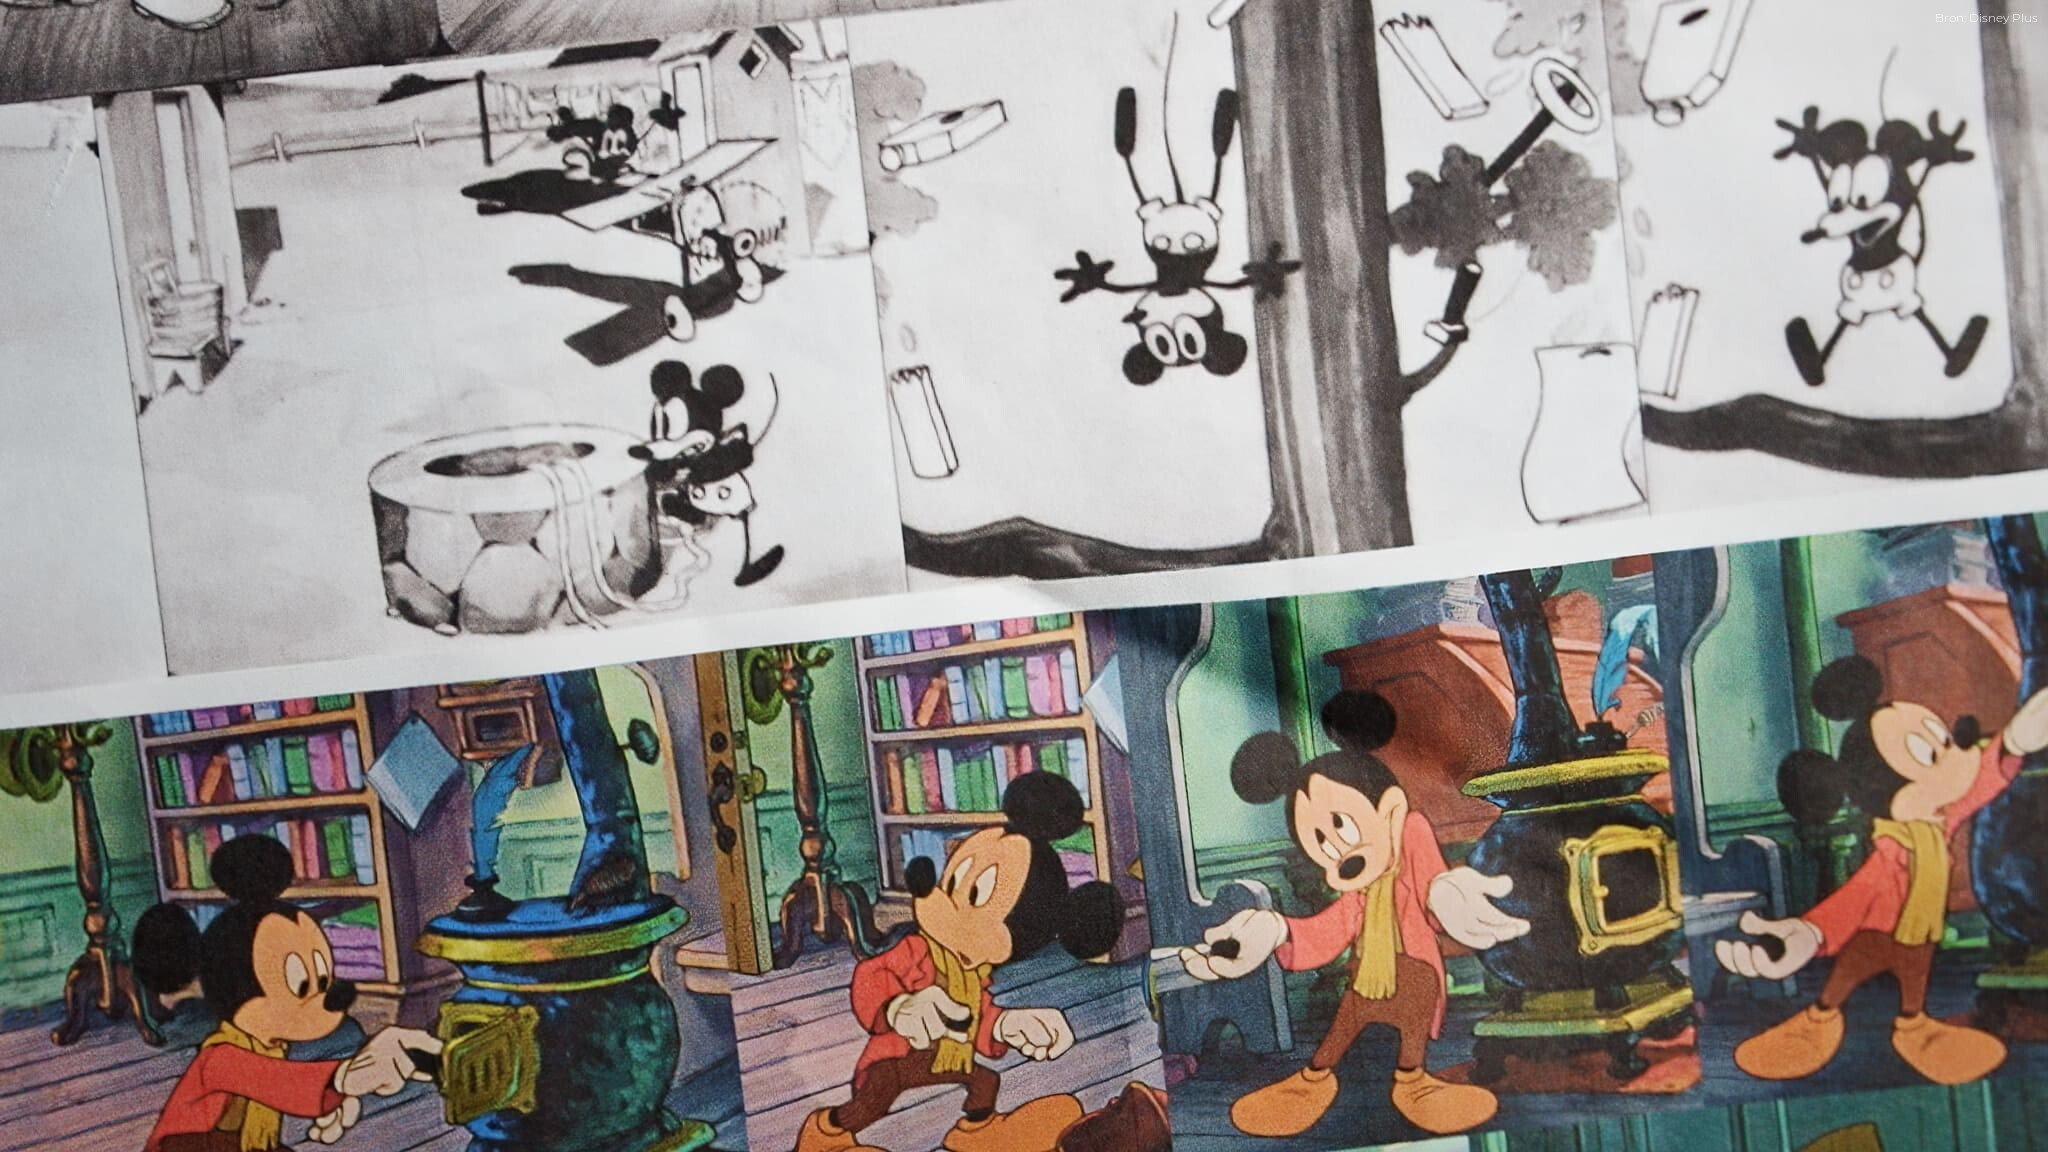 Mickey: Het Verhaal van een Muis